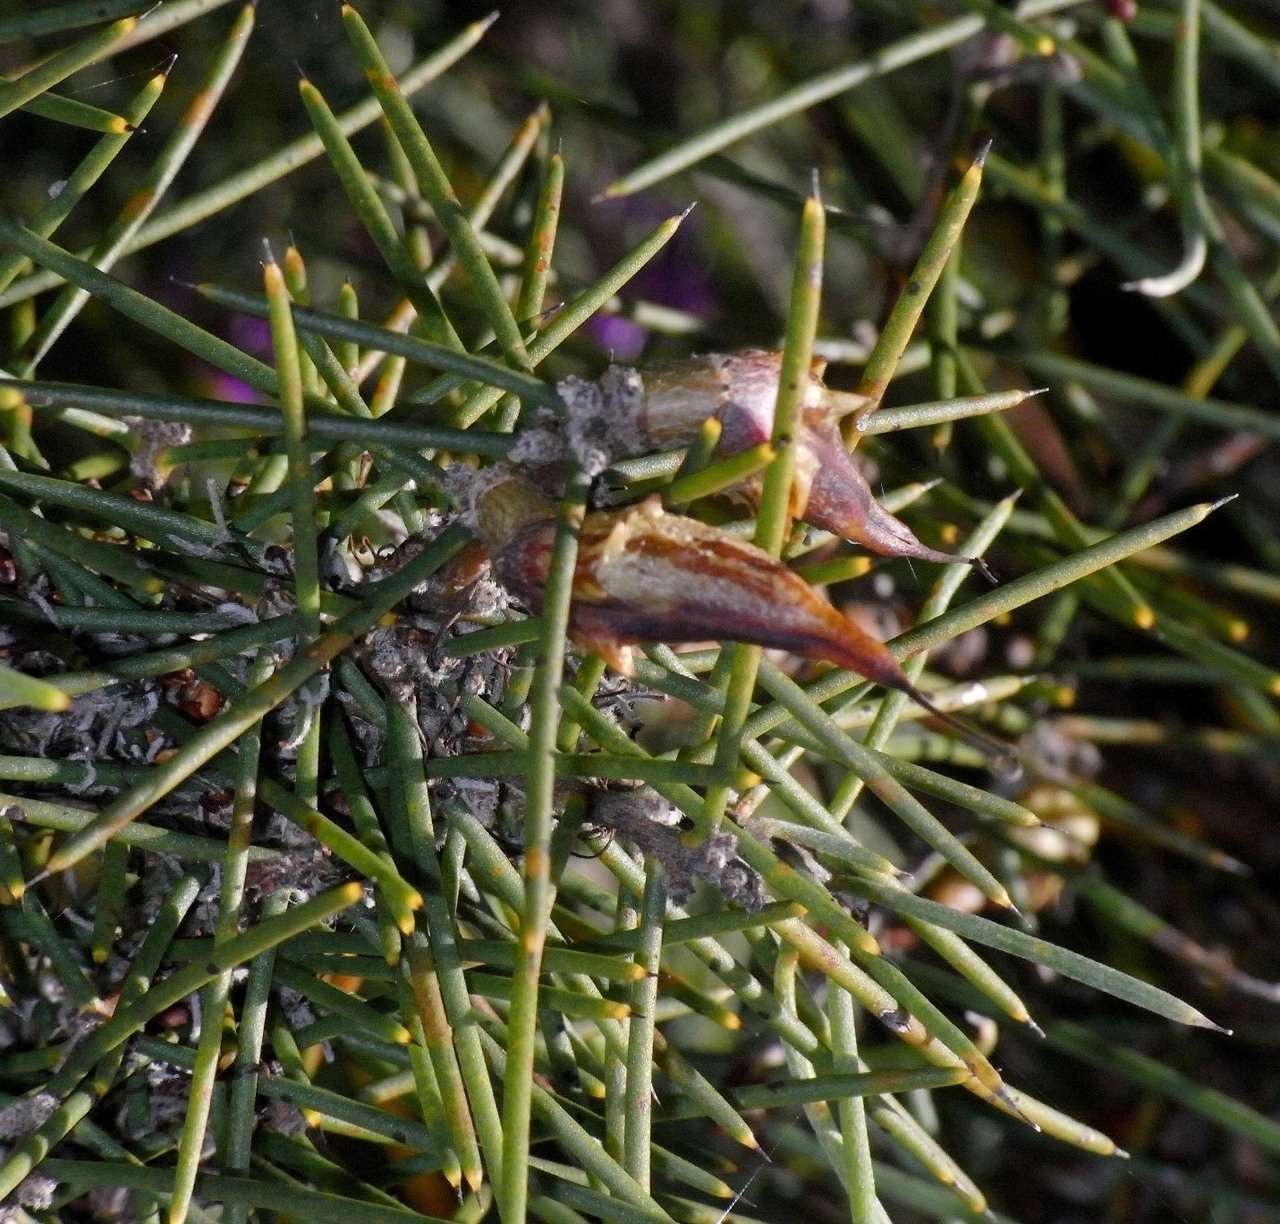 Image of Hakea teretifolia subsp. hirsuta (Endl.) R. M. Barker